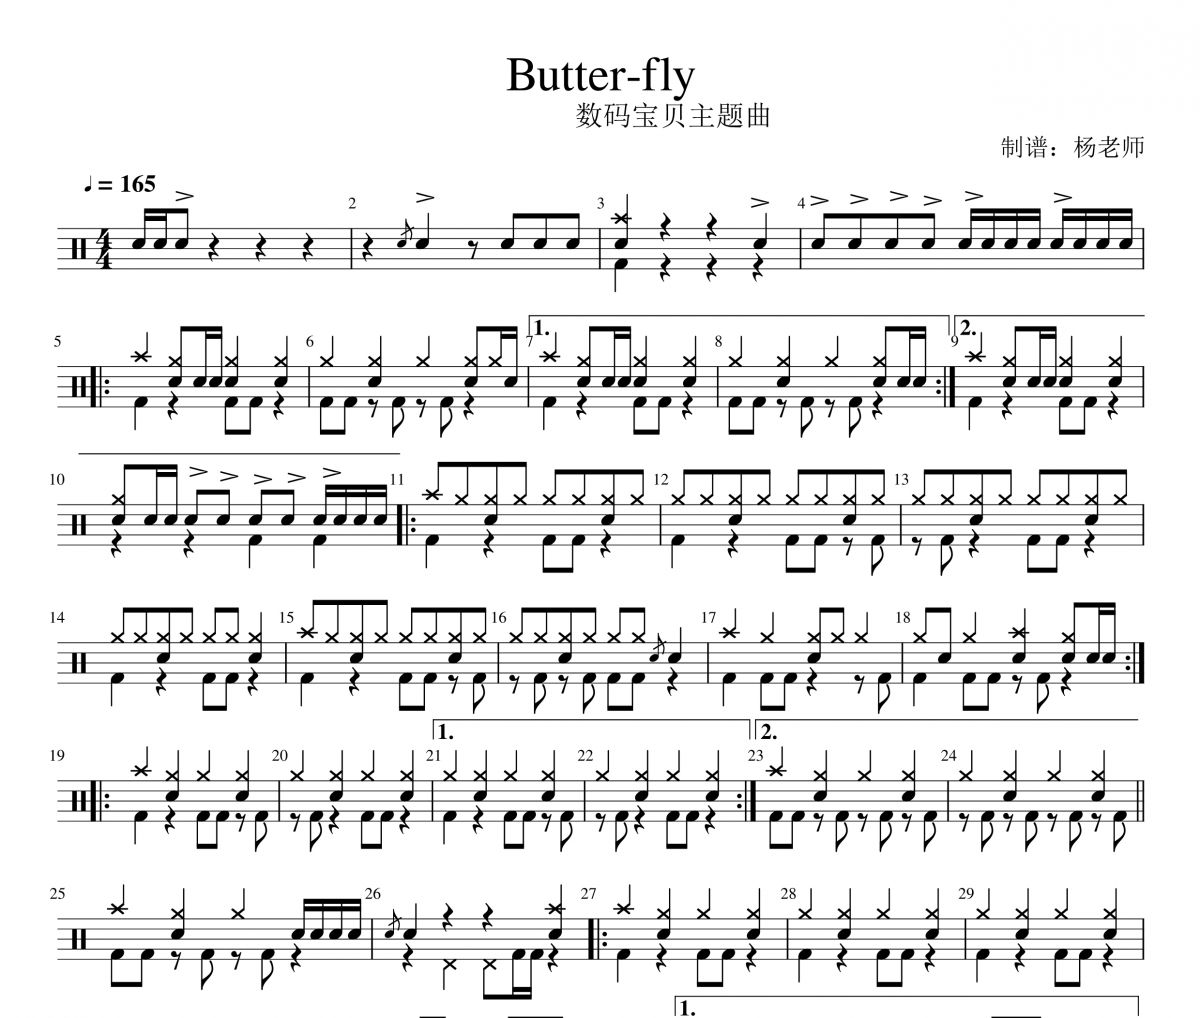 数码宝贝主题曲 Butter-fly架子鼓|爵士鼓|鼓谱 杨老师制谱